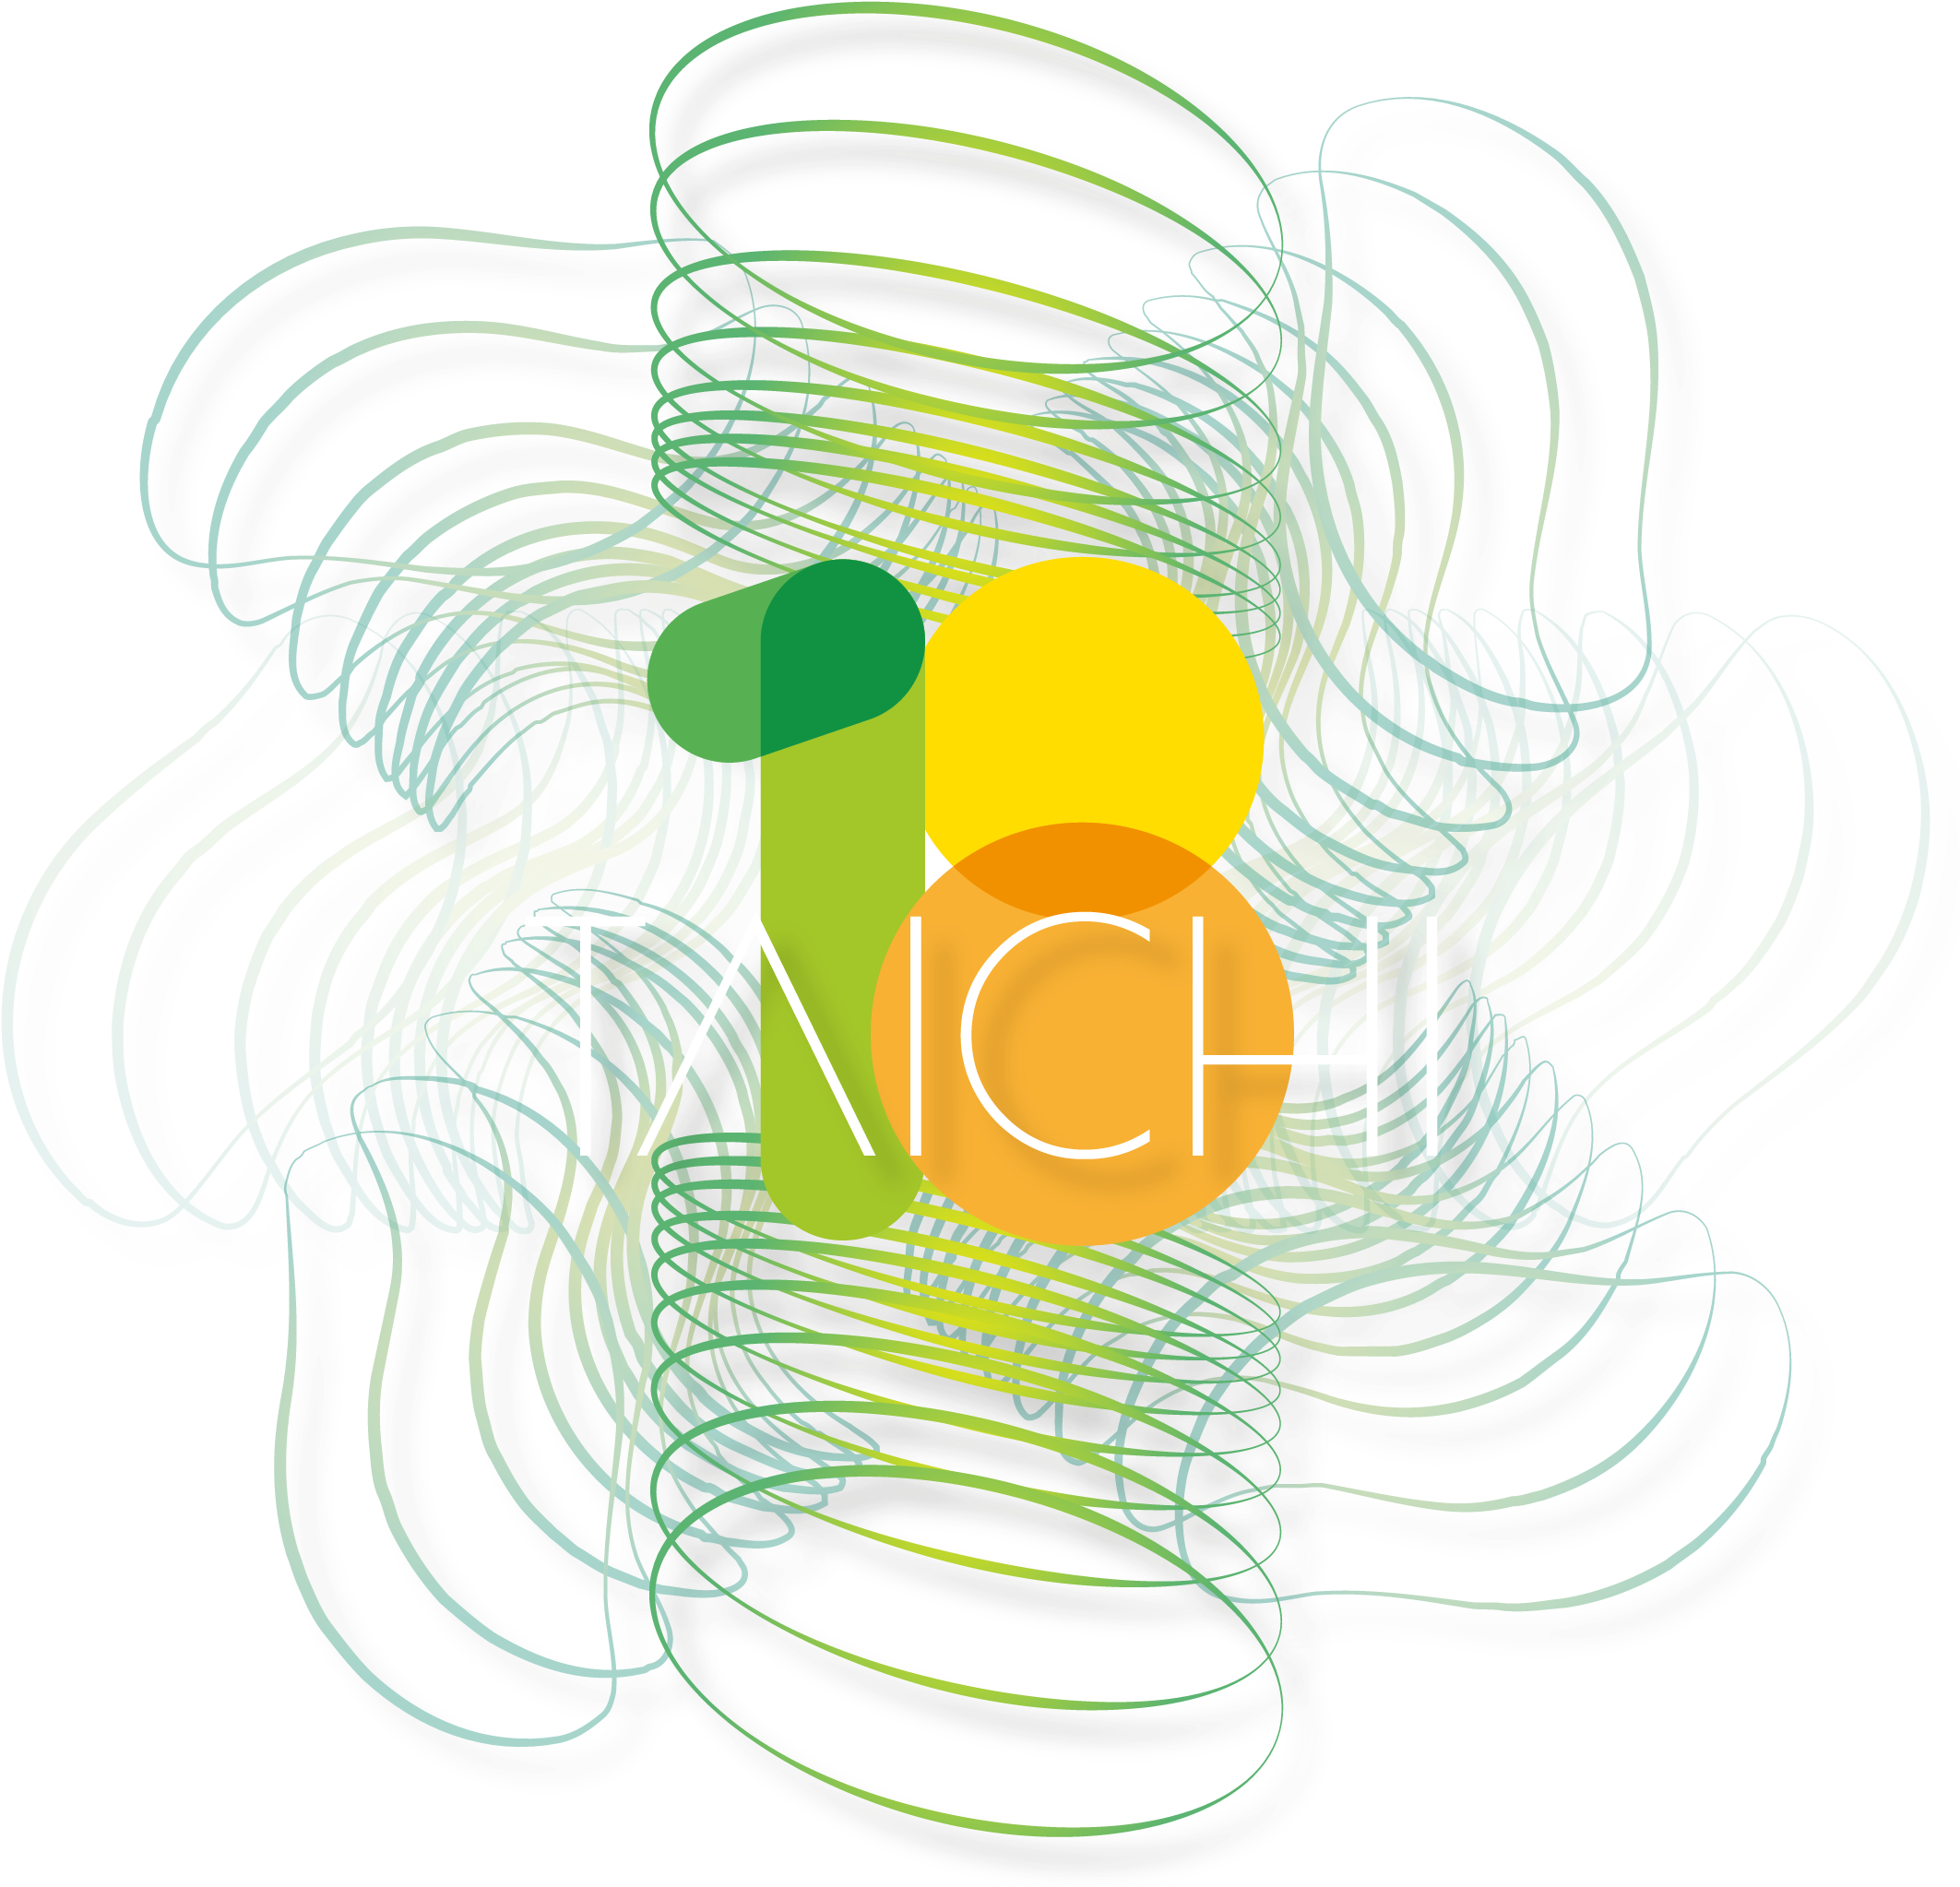 台灣人機互動研討會taichi 研究最前緣之意見 - Tai Chi (2168x2065)